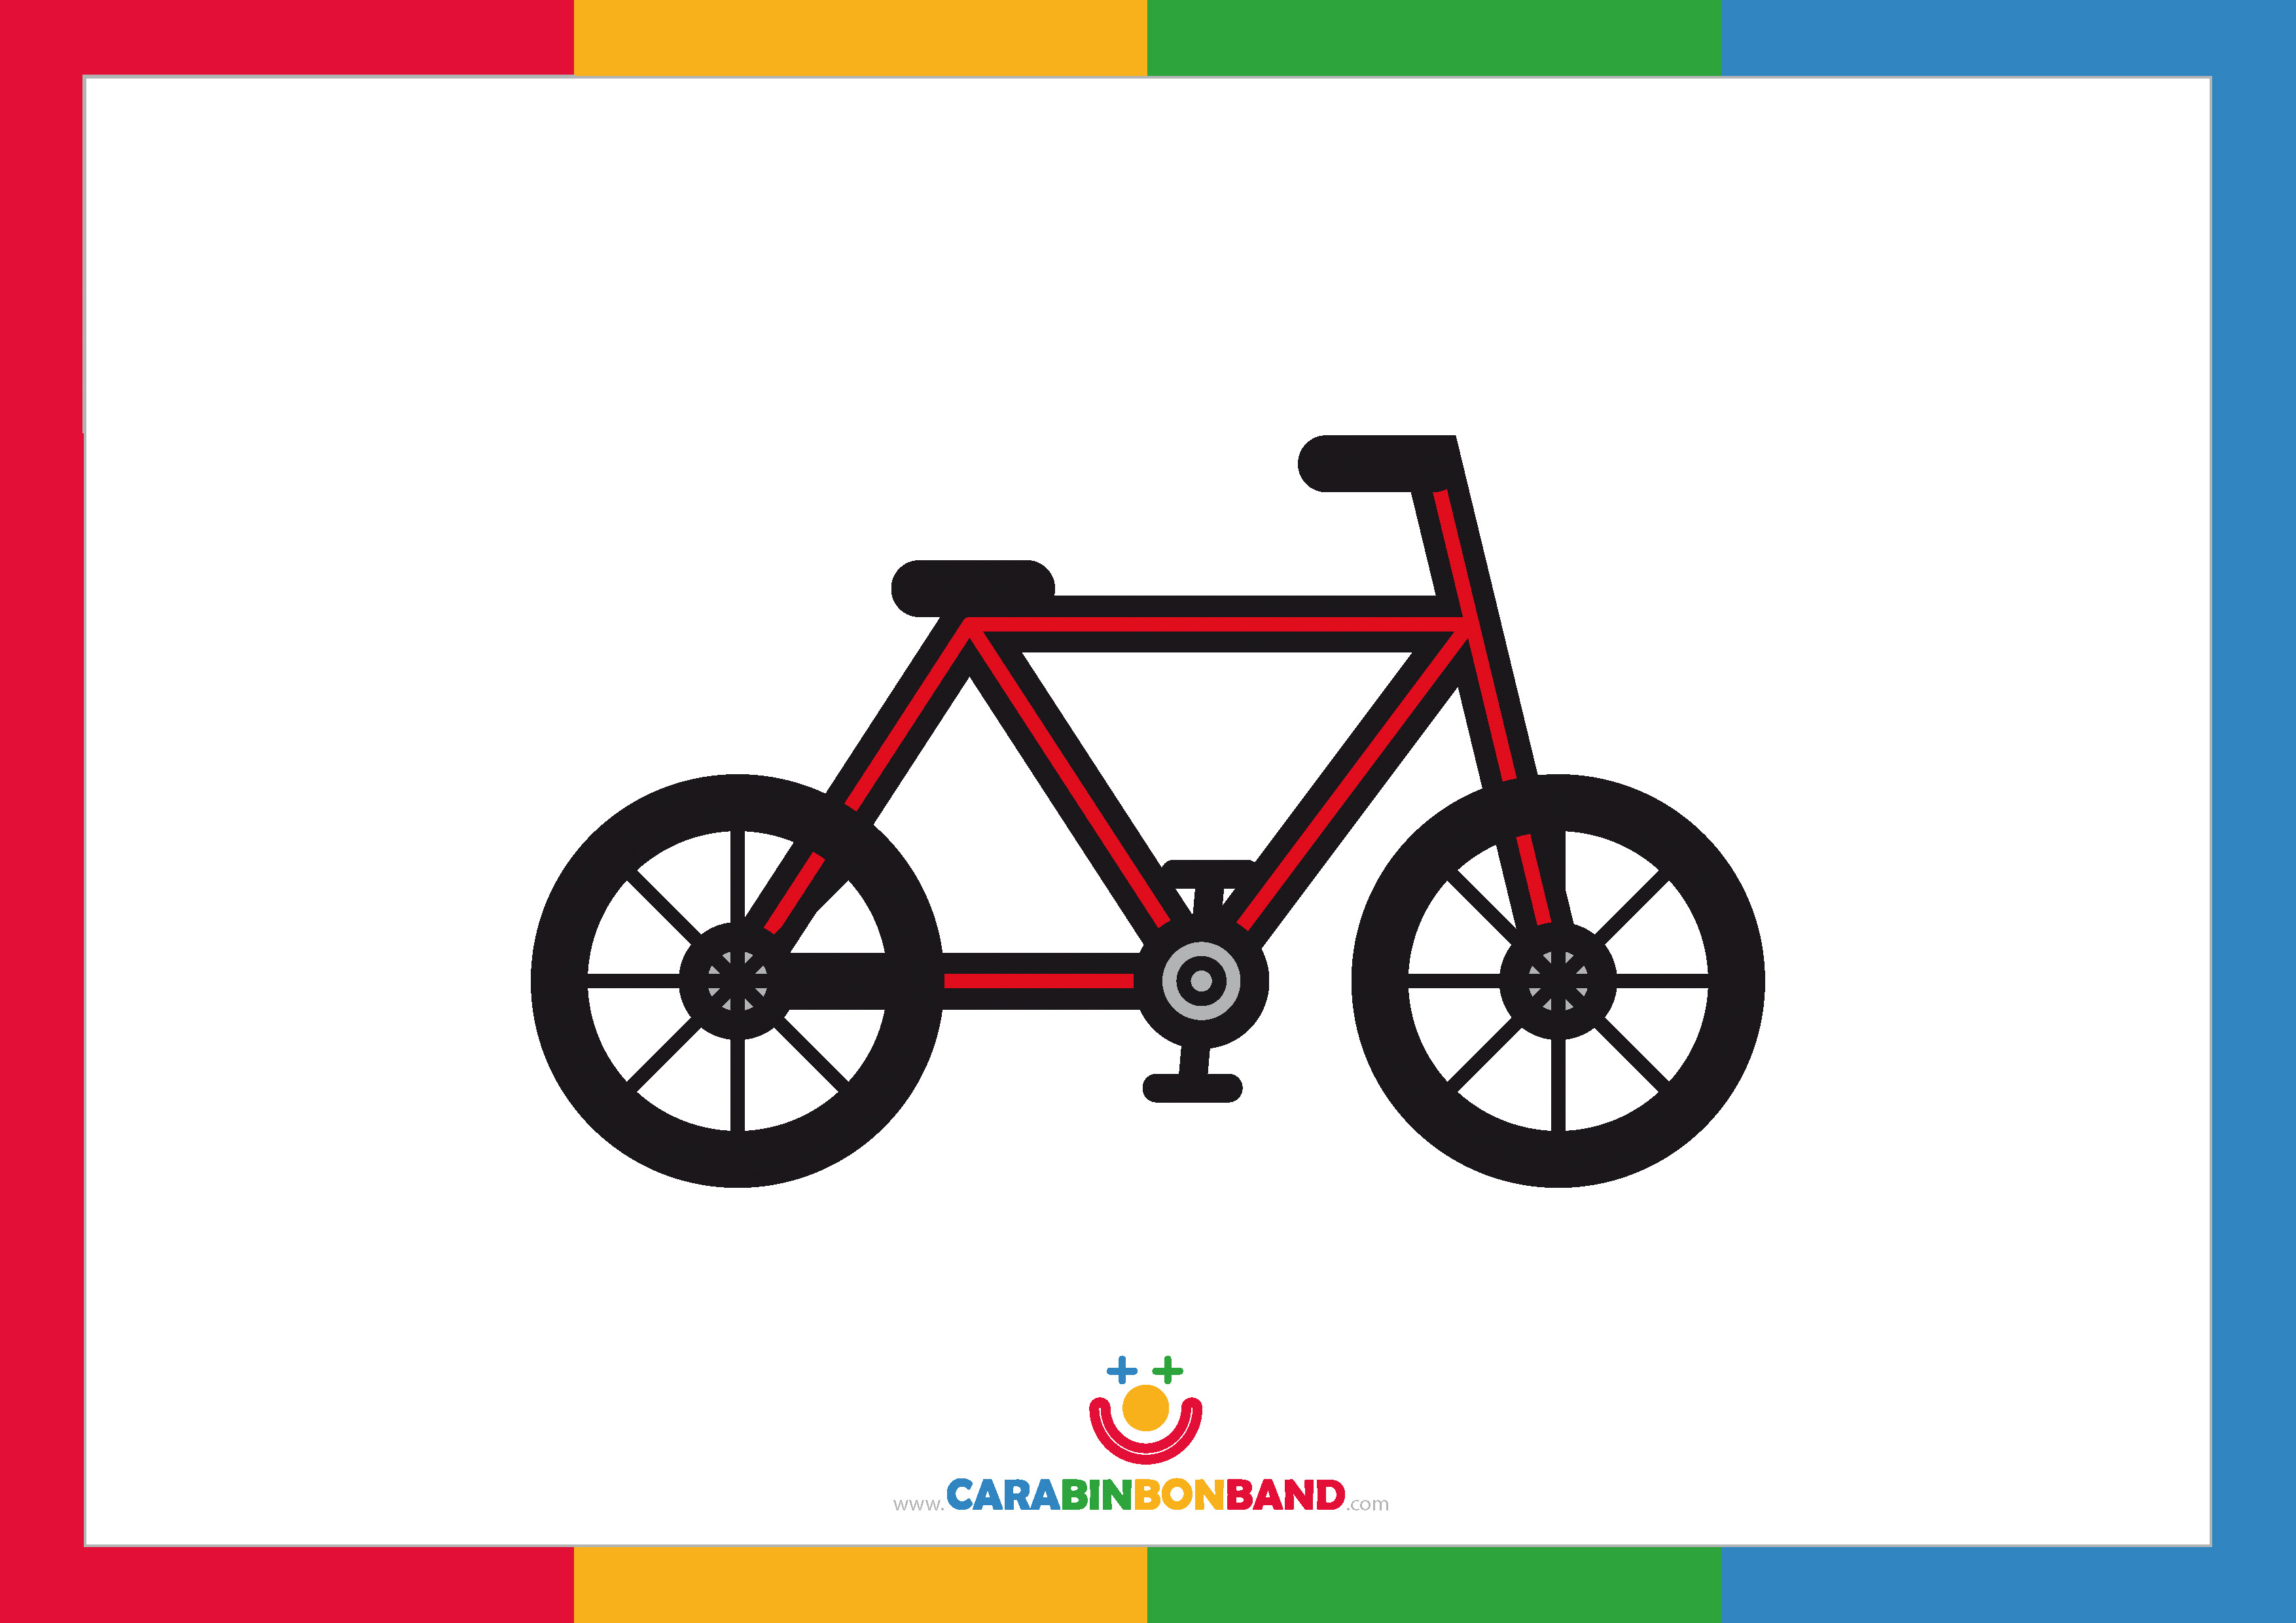 Dibujos fáciles cómo dibujar una bicicleta fácil para niños – CARA BIN BON BAND